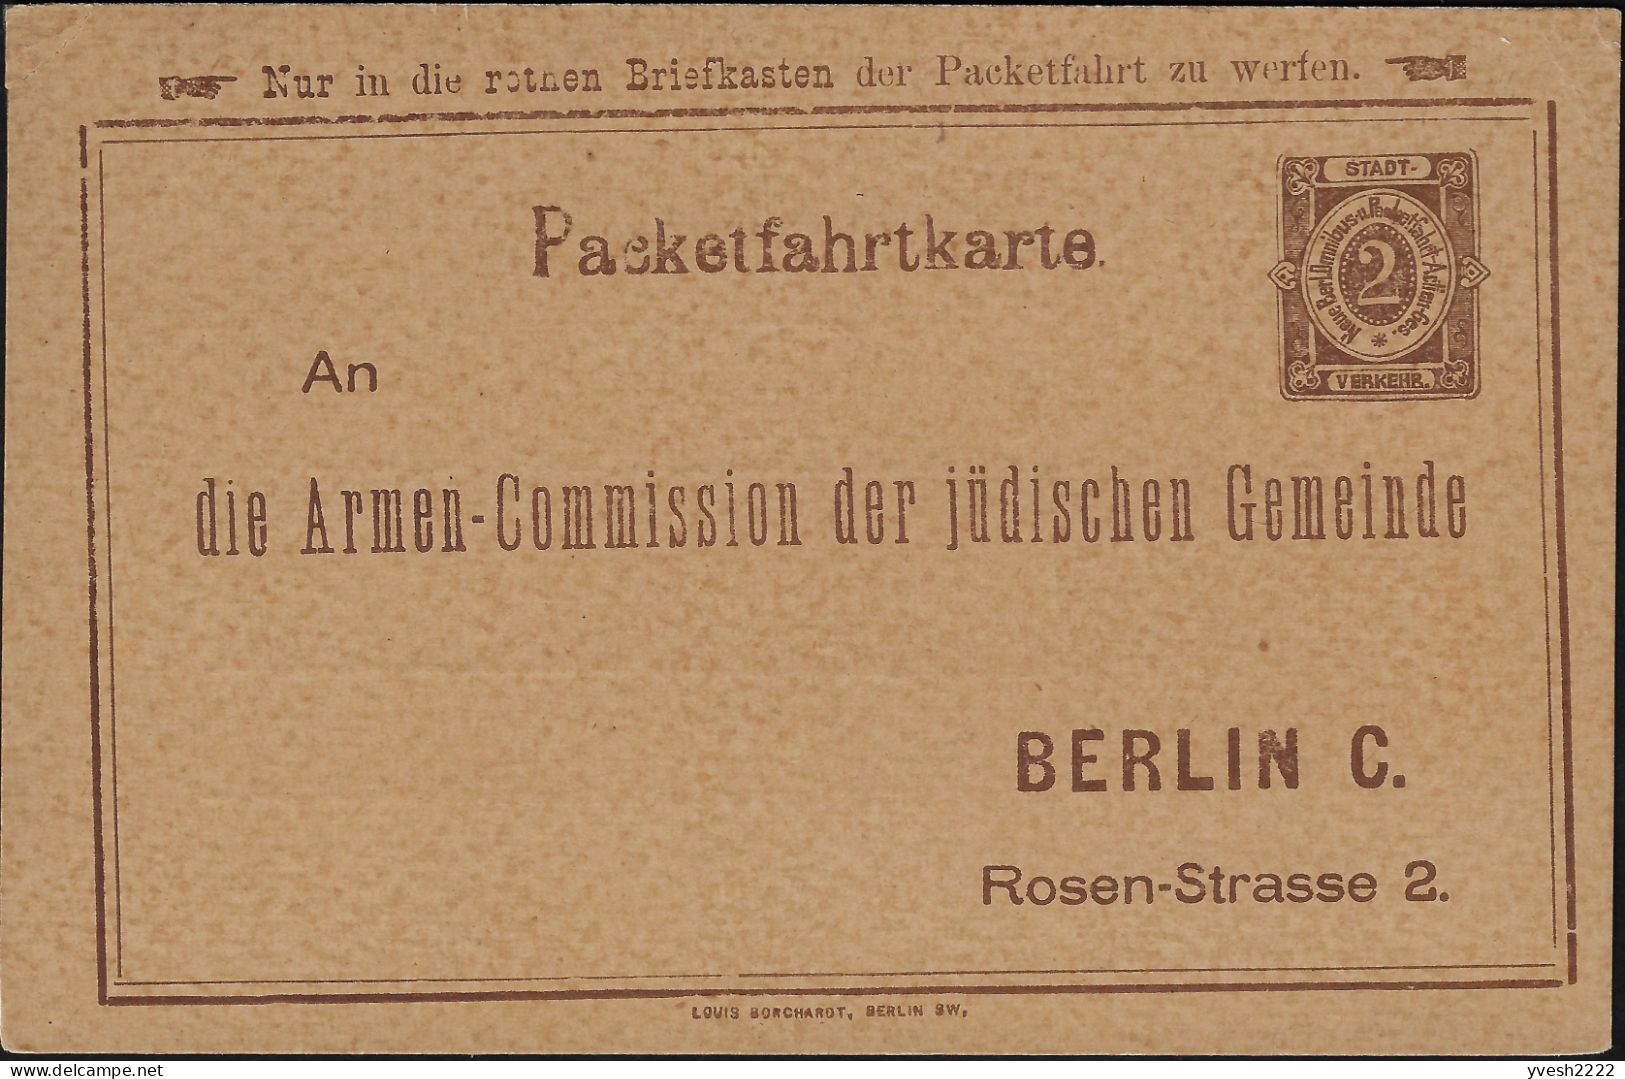 Berlin 1886 1888, 1897. 3 Entiers Postaux Poste Privée. Collecte De Fonds Pour Les Pauvres De La Communauté Juive Locale - Judaisme